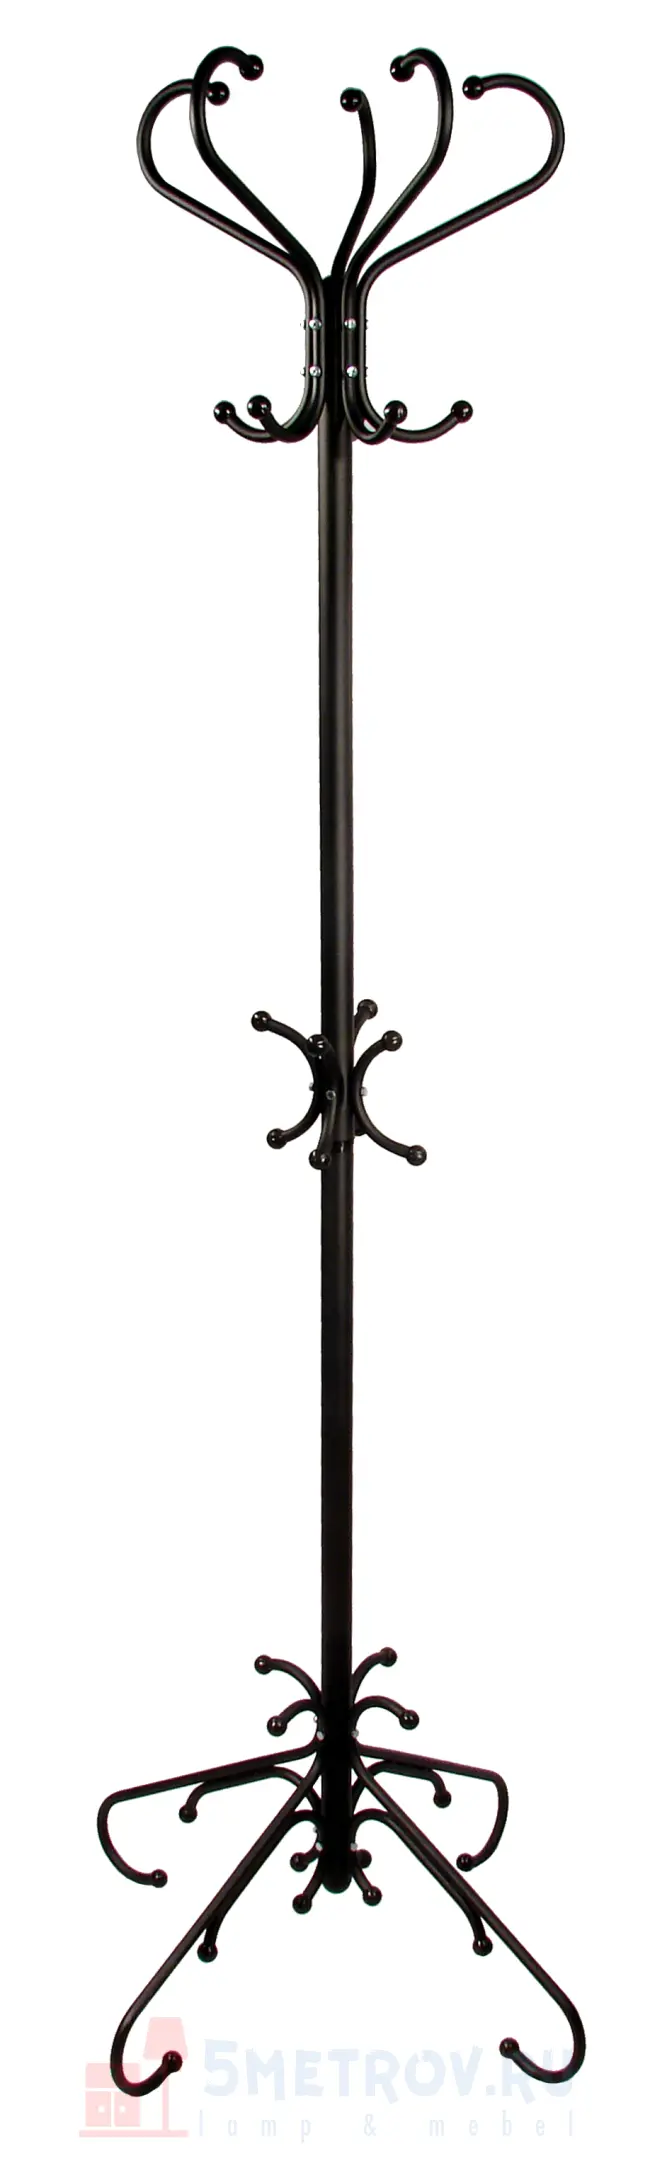 Напольная вешалка Мебелик М-5 [Металлик] Металлик, 1740, 700, 700